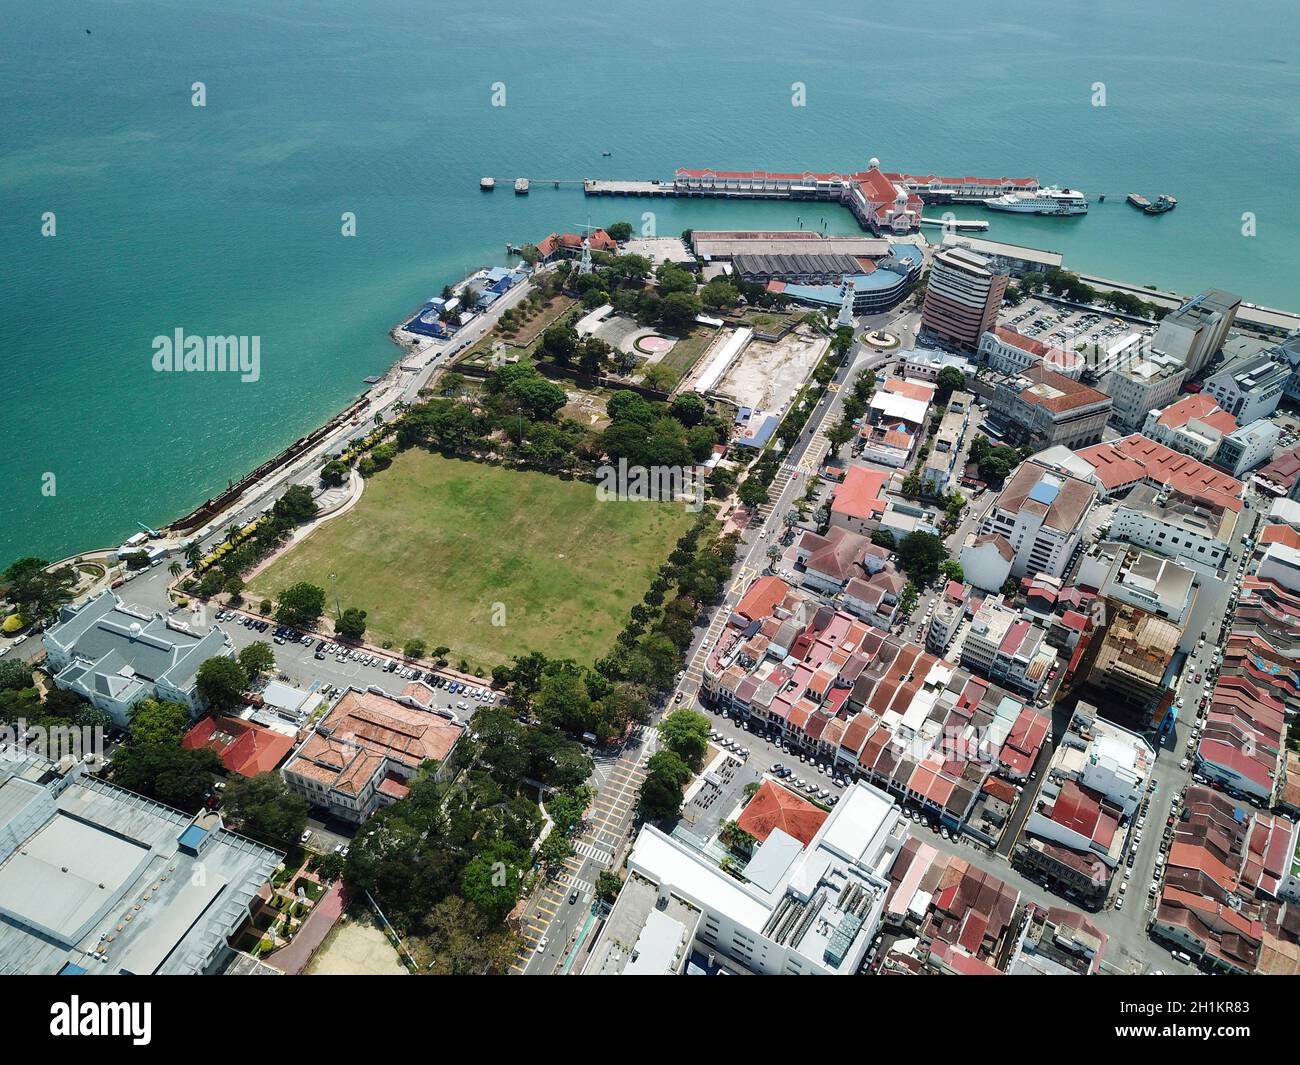 Georgetown, Penang/Malaysia - Mar 17 2020: Padang Kota Lama and Swettenham Pier. Stock Photo